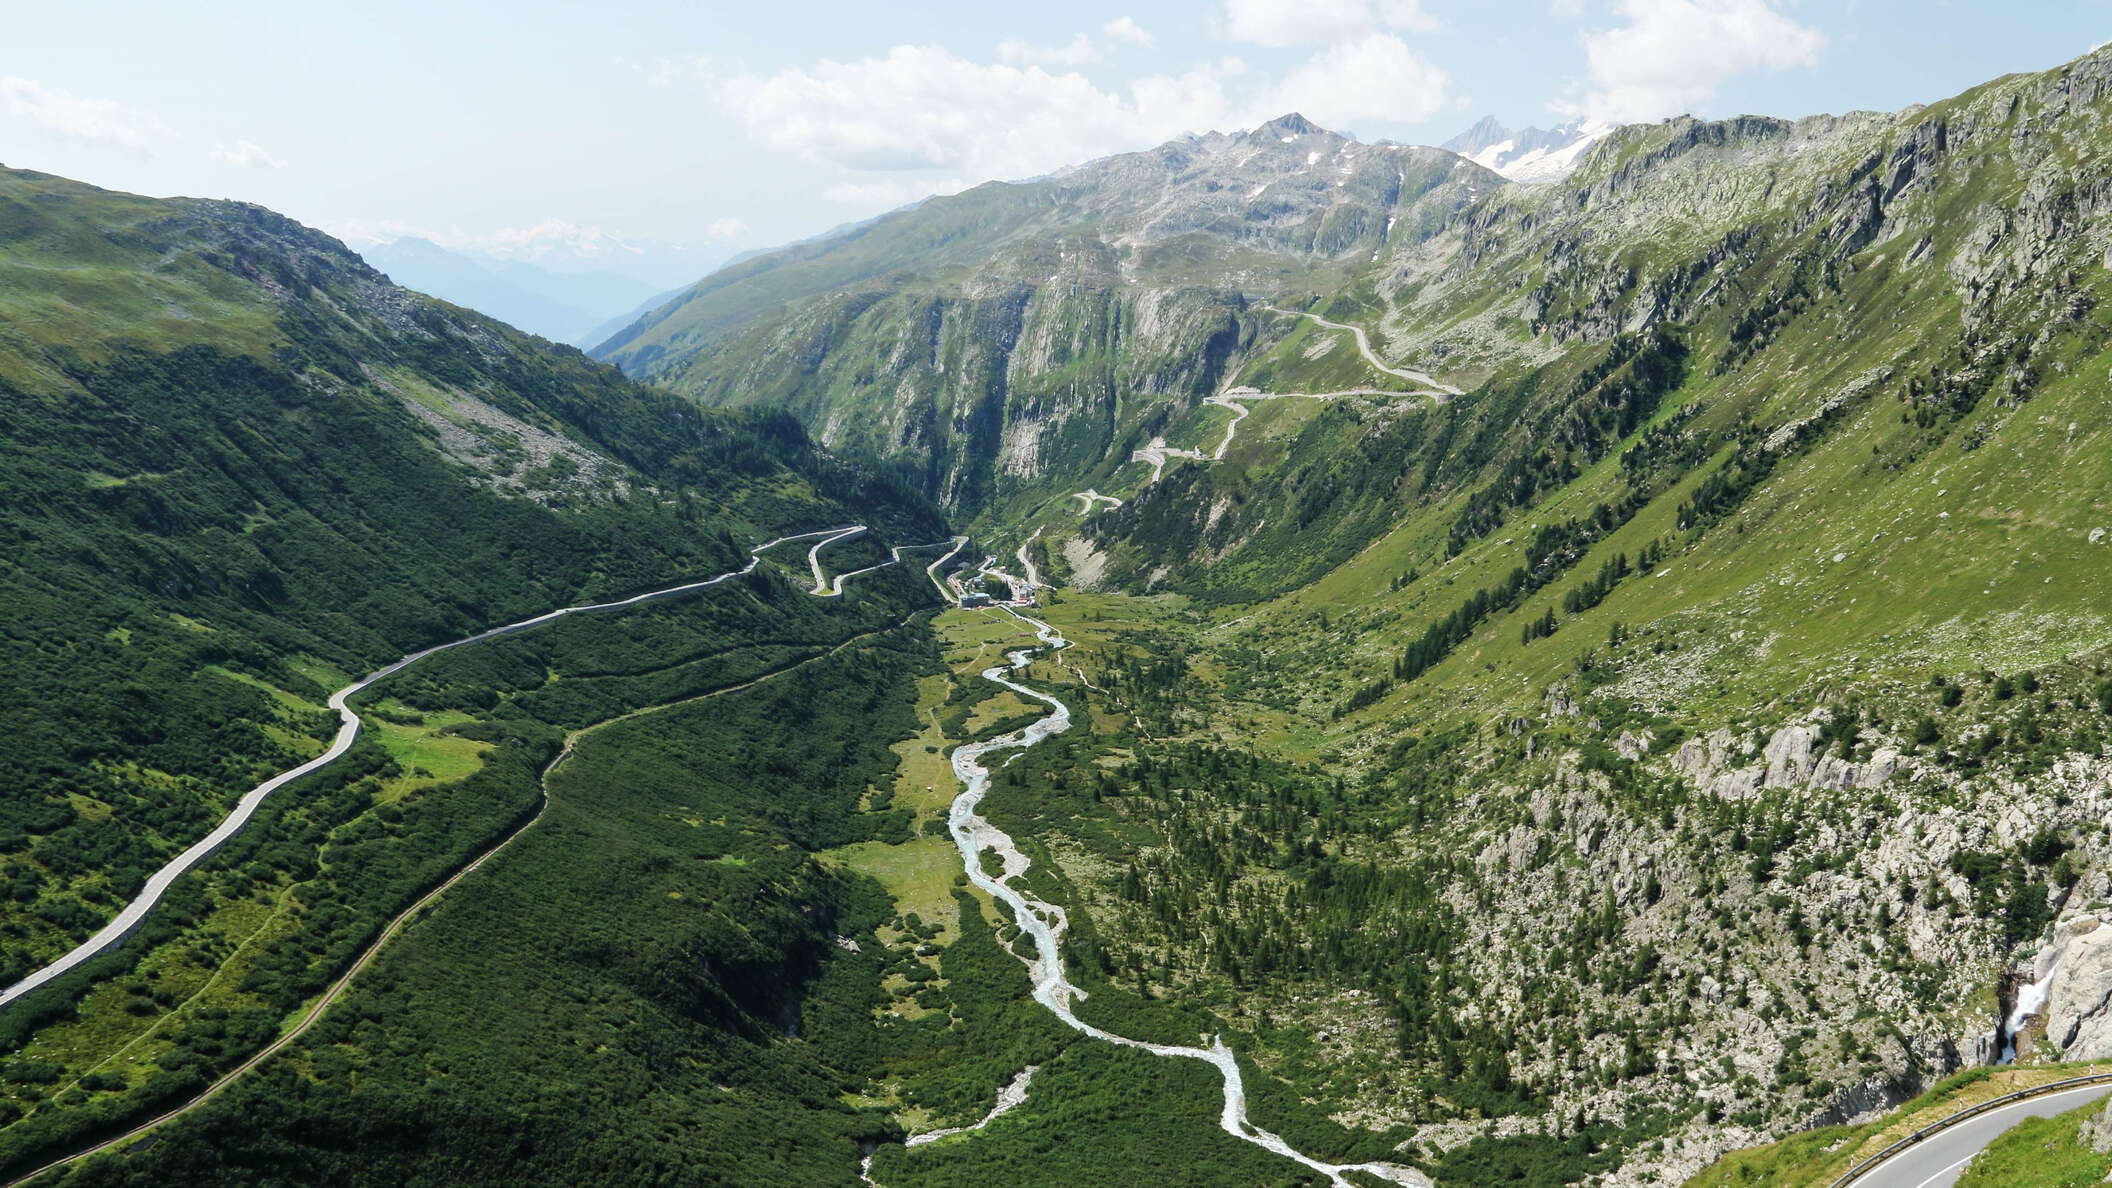 Gletsch | Furkapass and Grimselpass roads